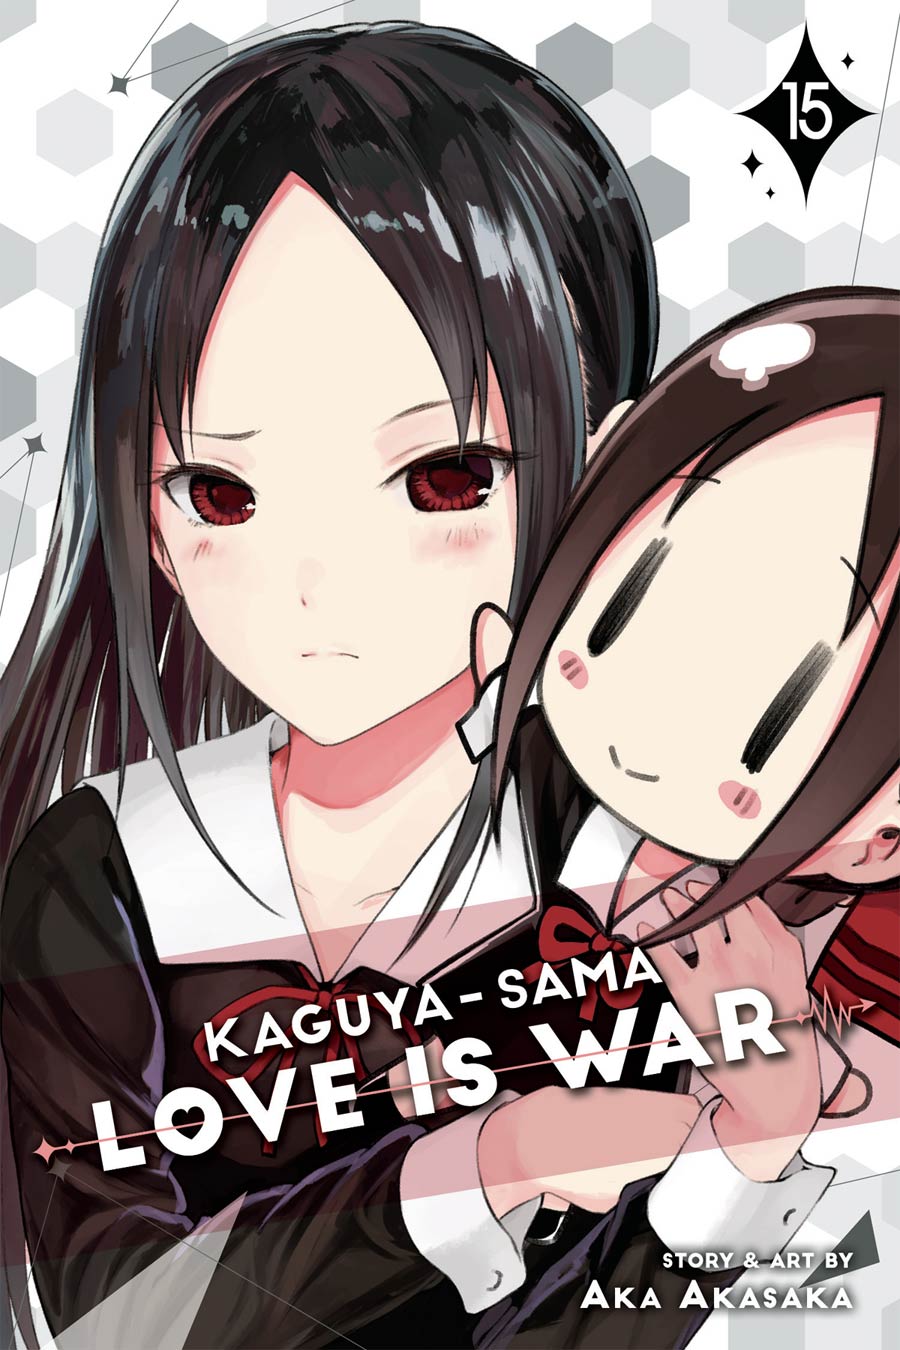 Kaguya-Sama Love Is War Vol 15 GN